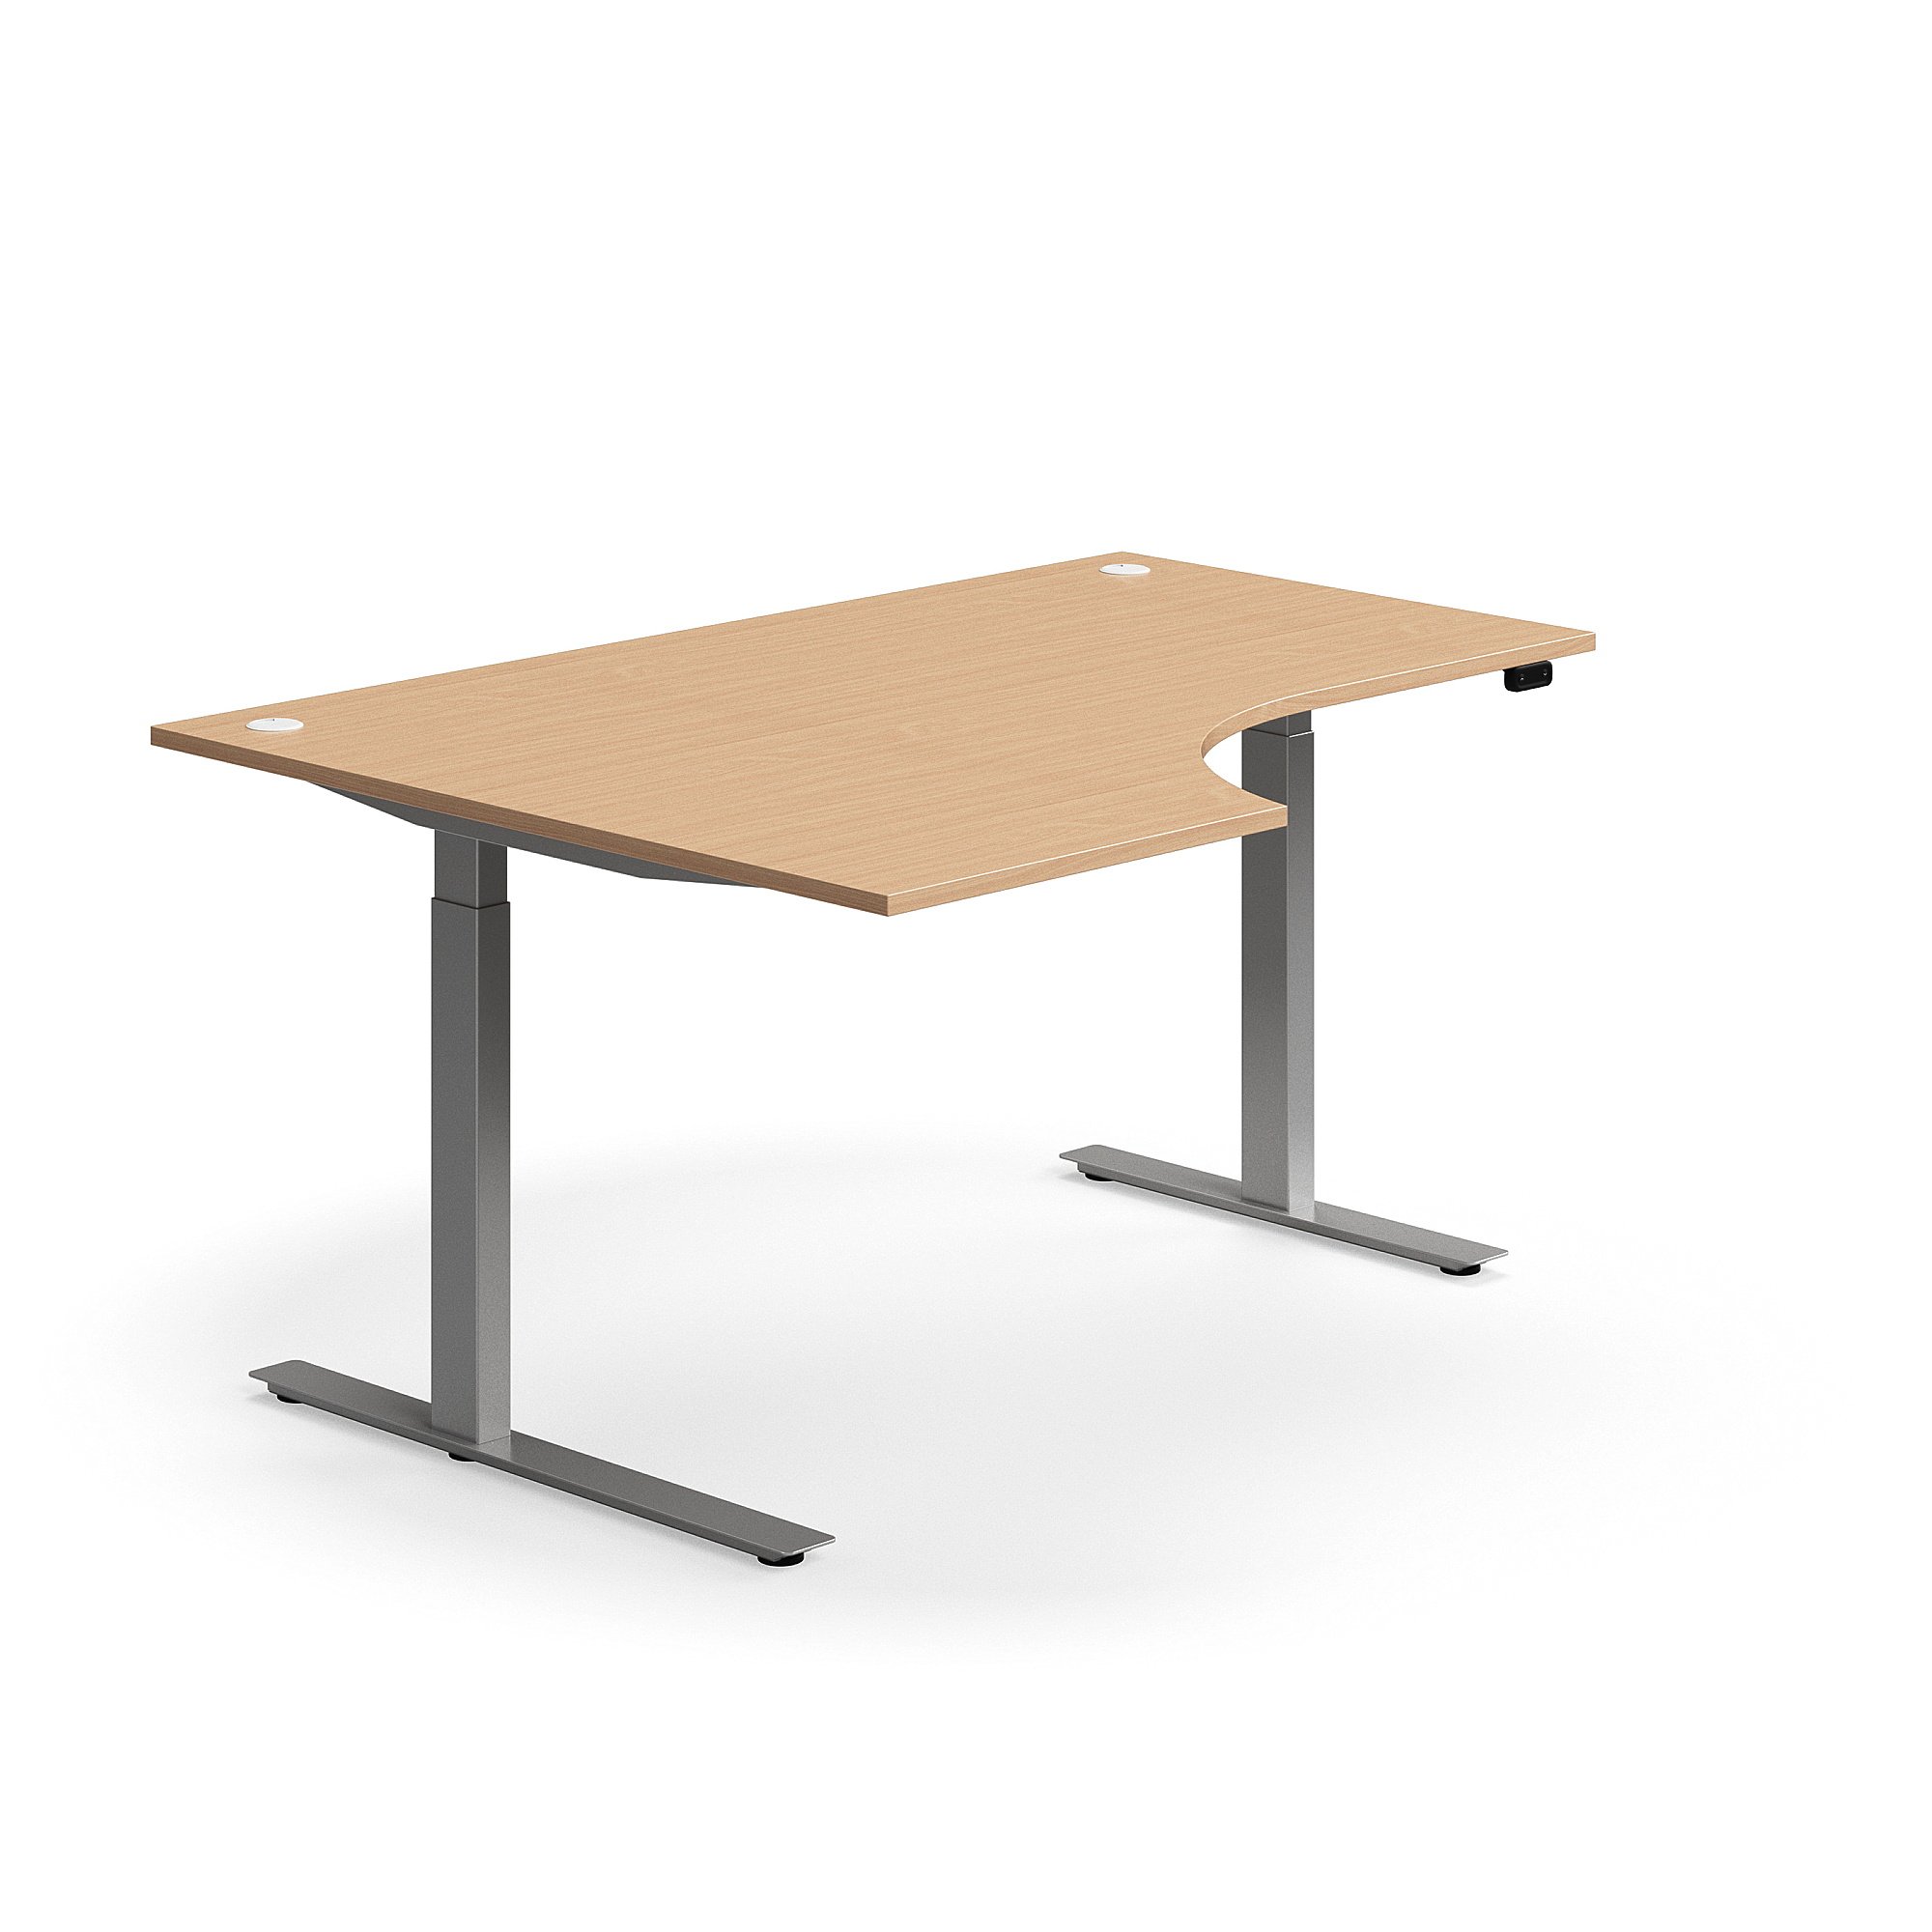 Výškově nastavitelný stůl FLEXUS, rohový, 1600x1200 mm, stříbrná podnož, buk